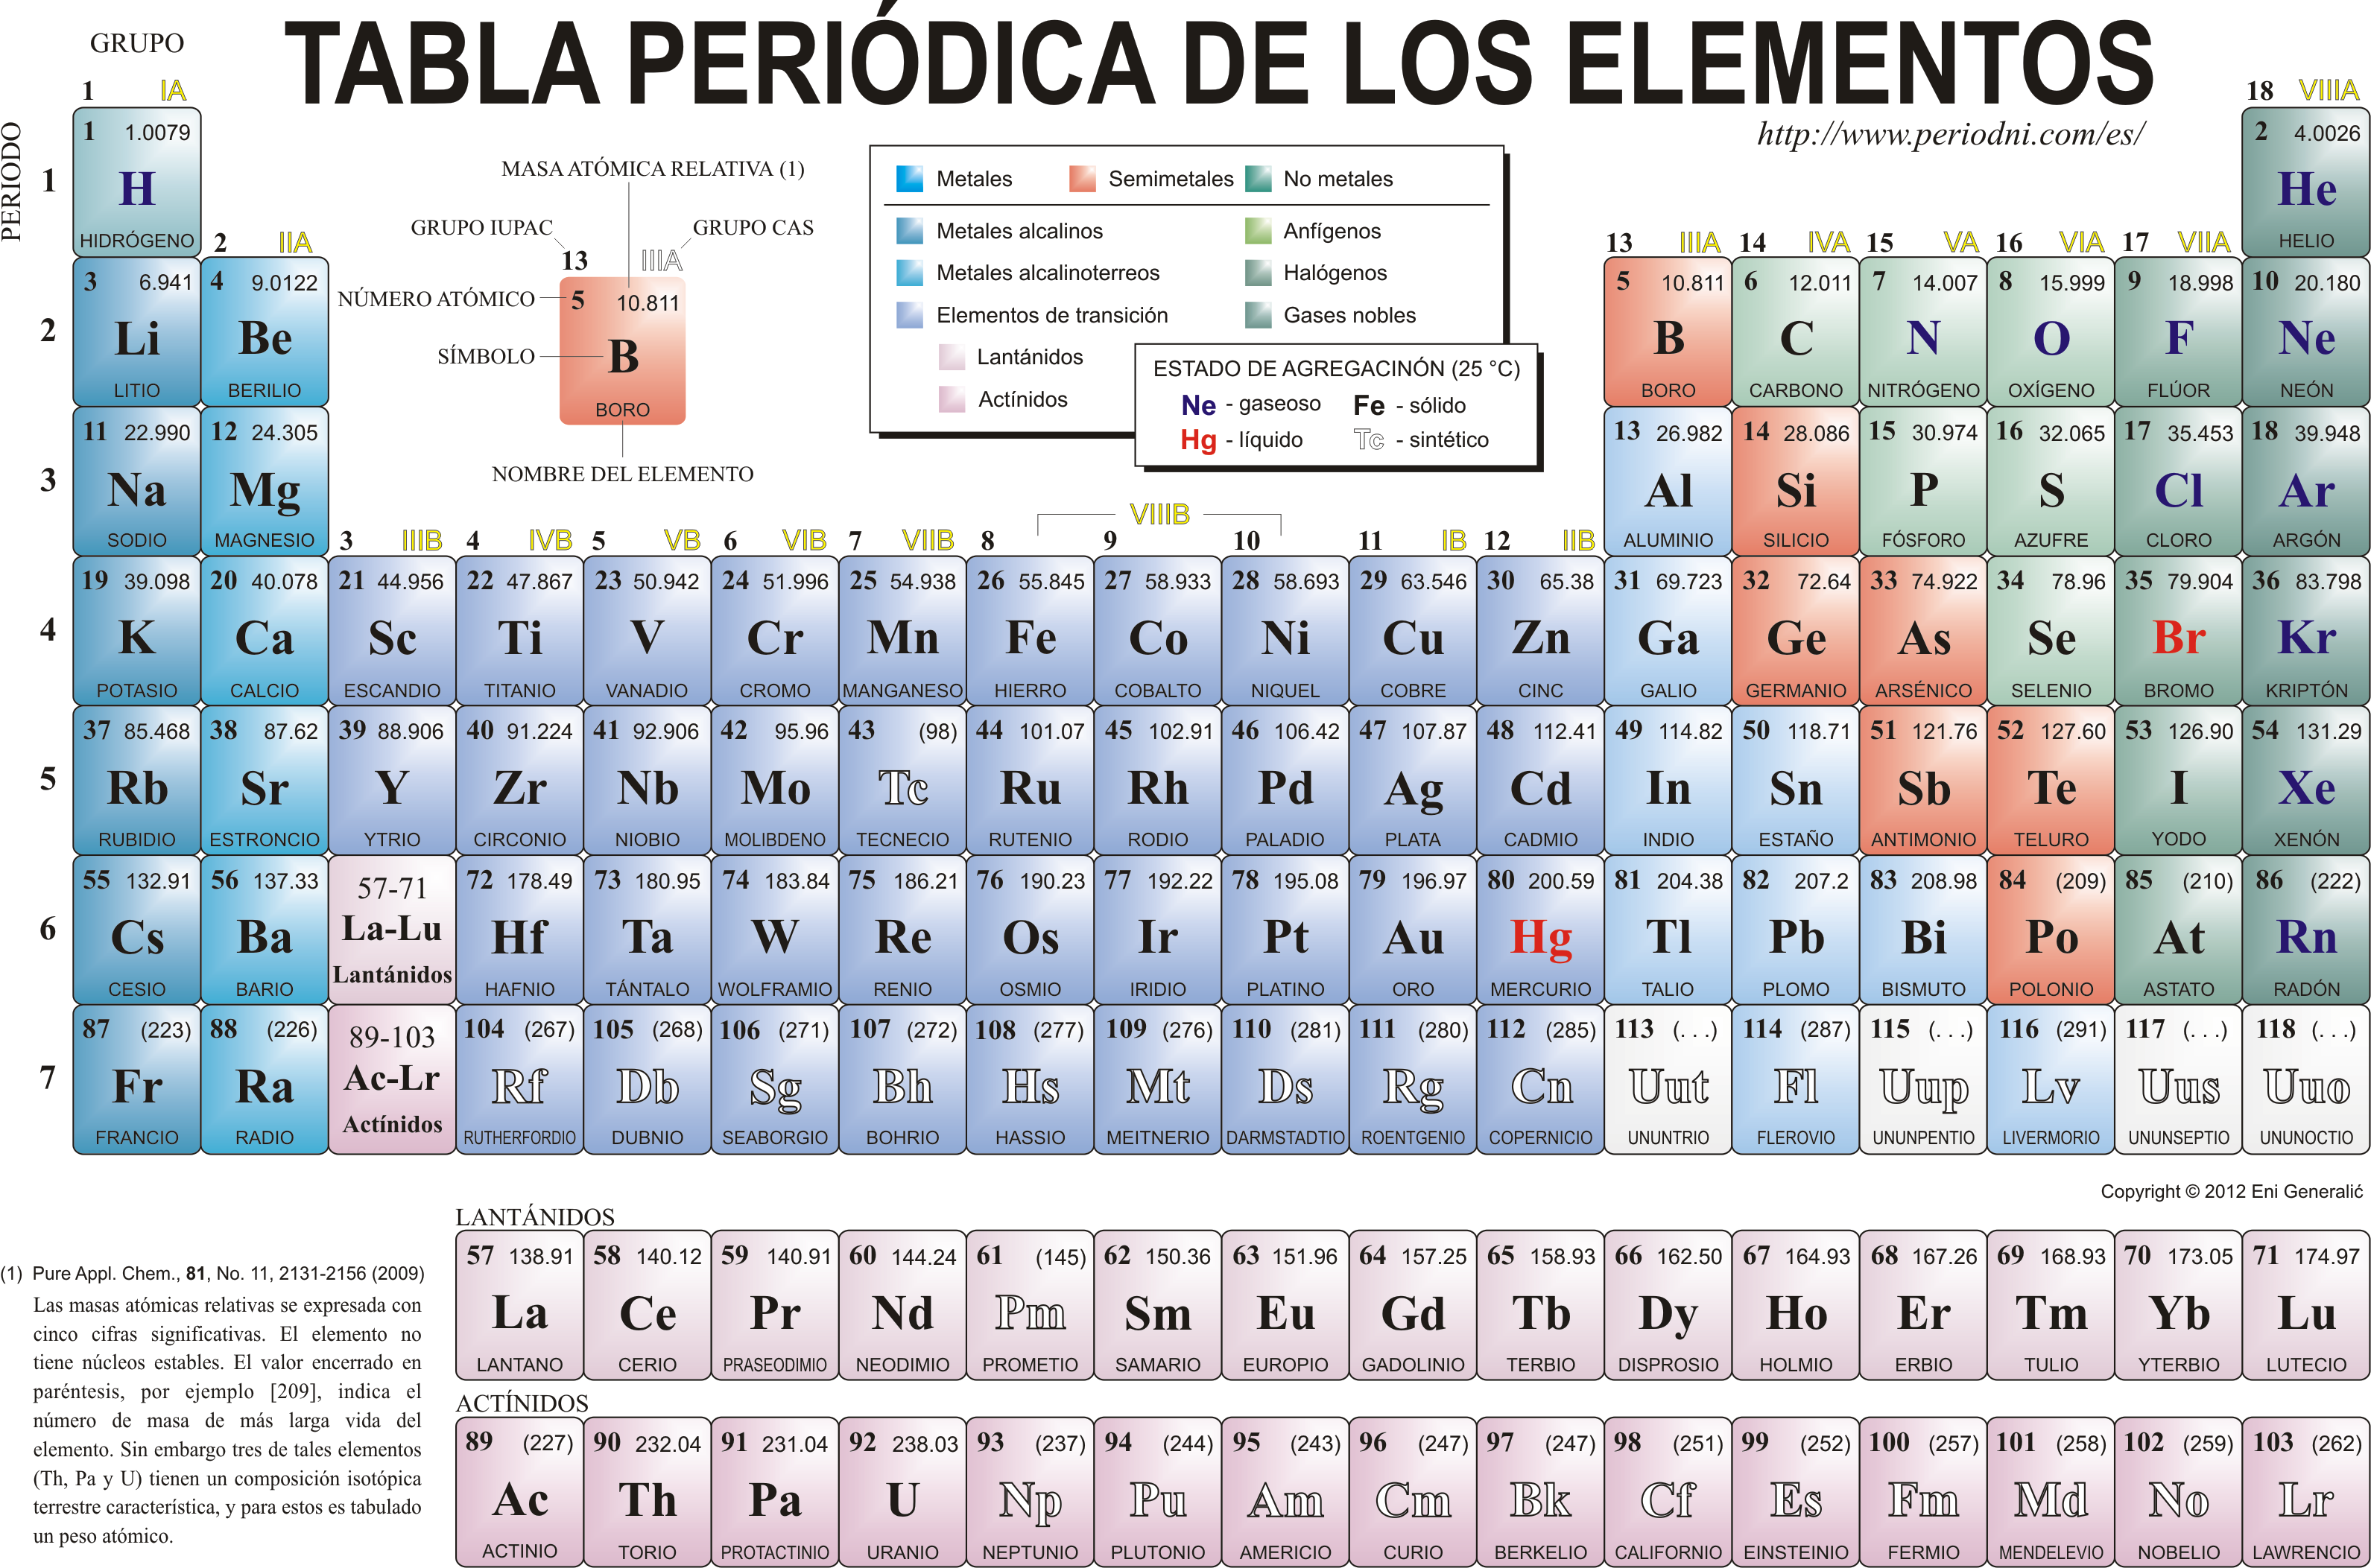 A Periódica Agrupa Os Elementos Químicos - EDUBRAINAZ